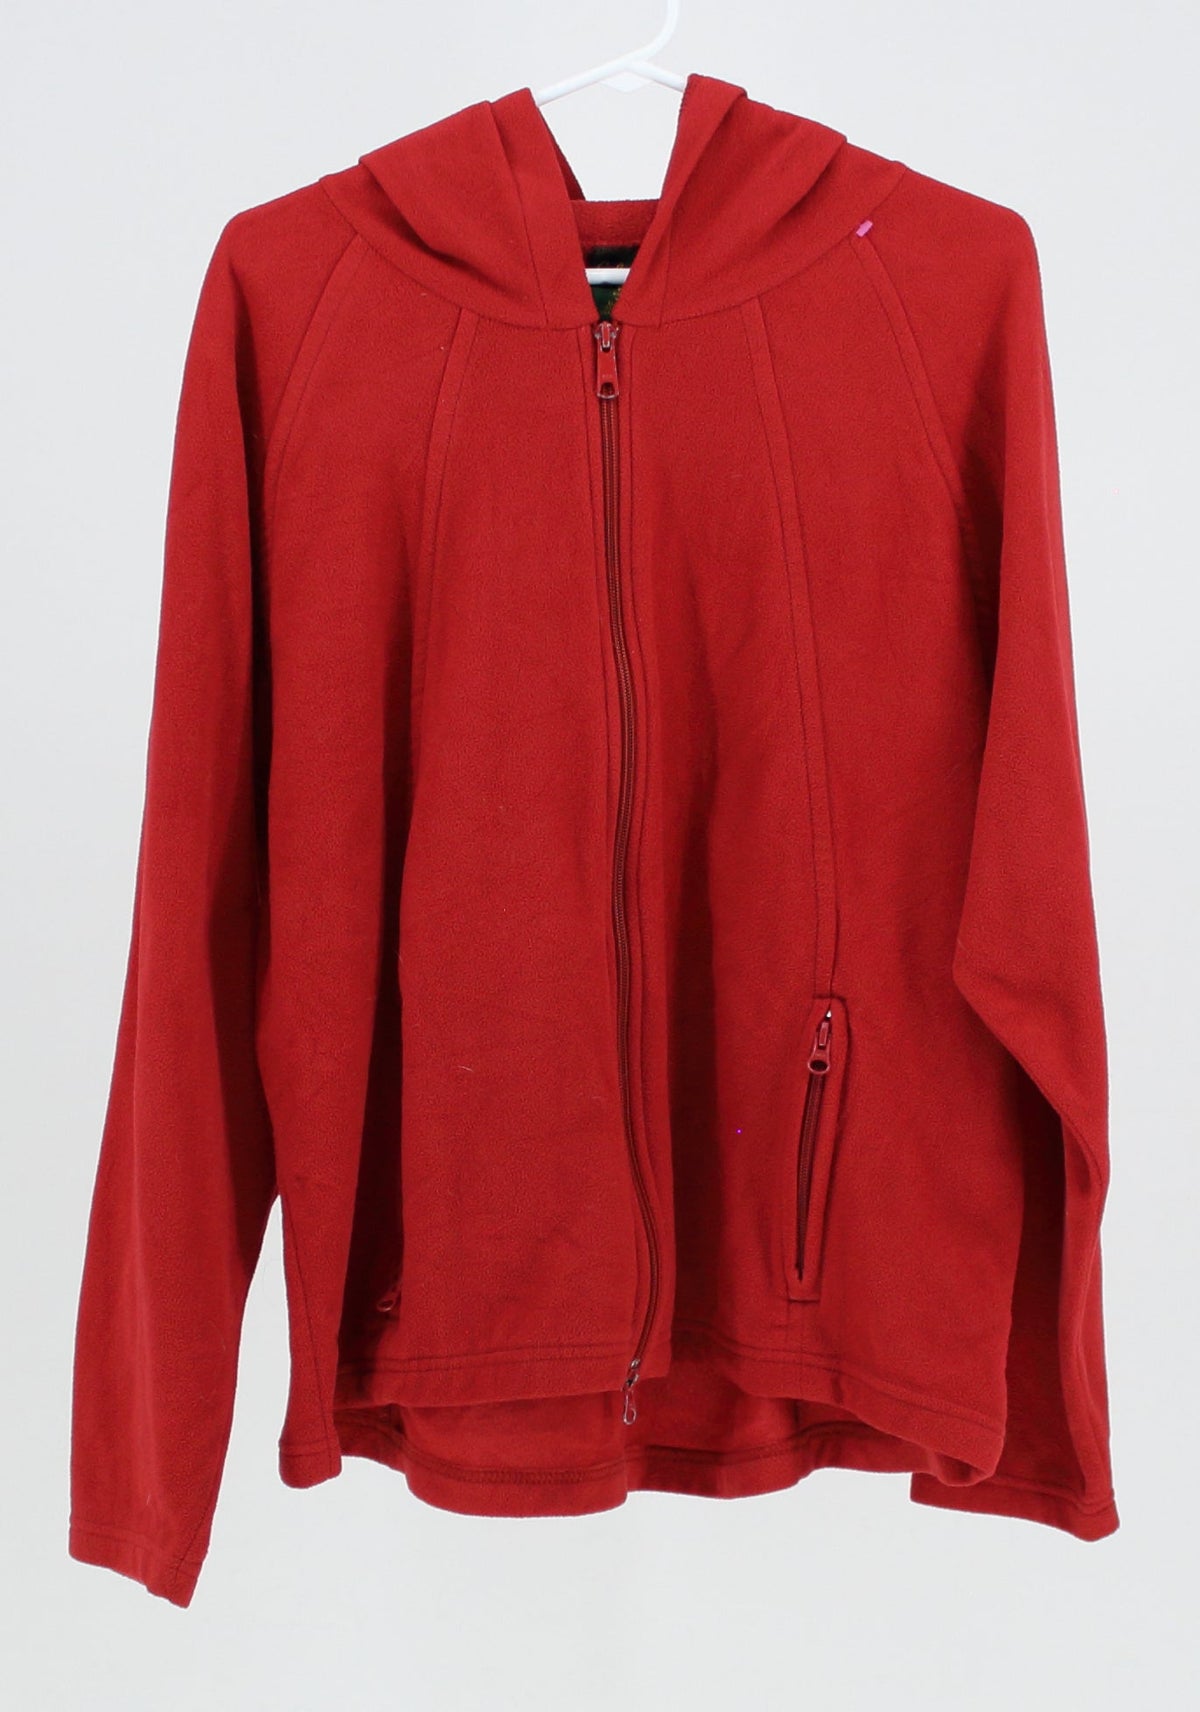 Cabela's Red Fleece Zip Up Sweater